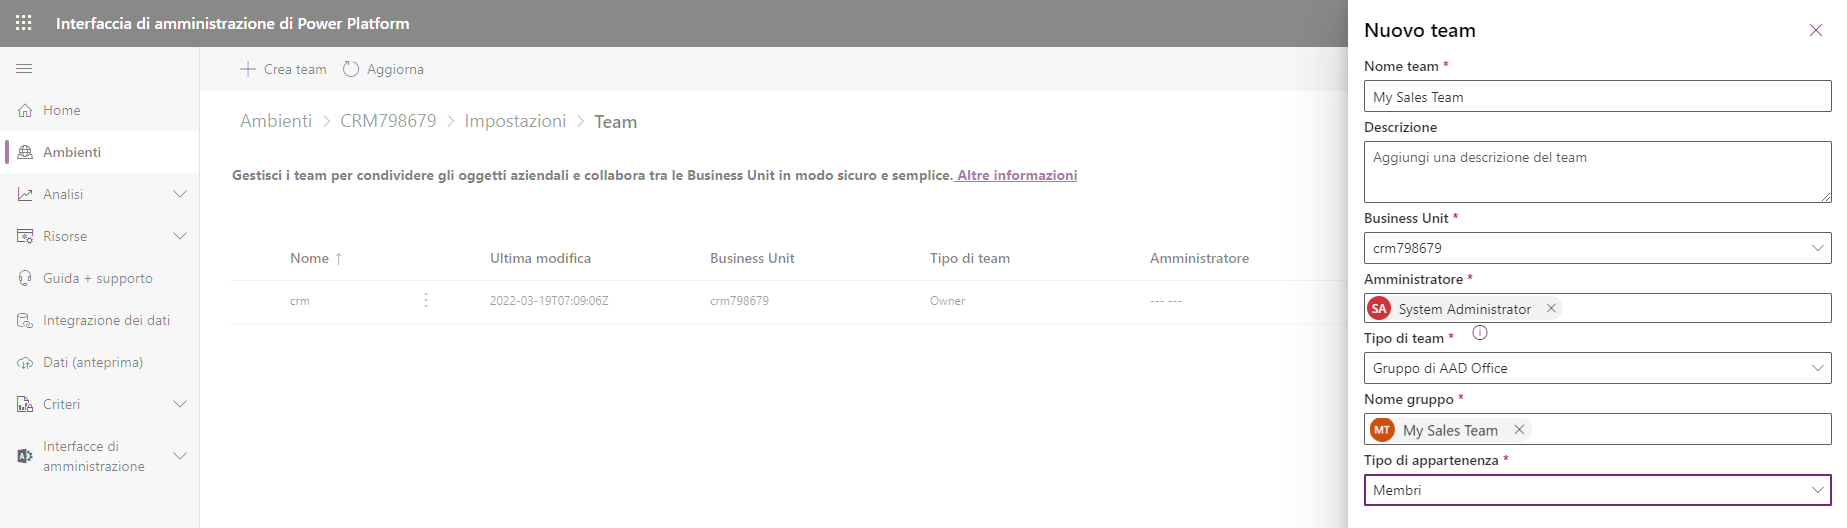 Screenshot che mostra il processo di creazione di un nuovo team e la sua associazione a un gruppo di Office nell'interfaccia di amministrazione di Microsoft Power Platform.